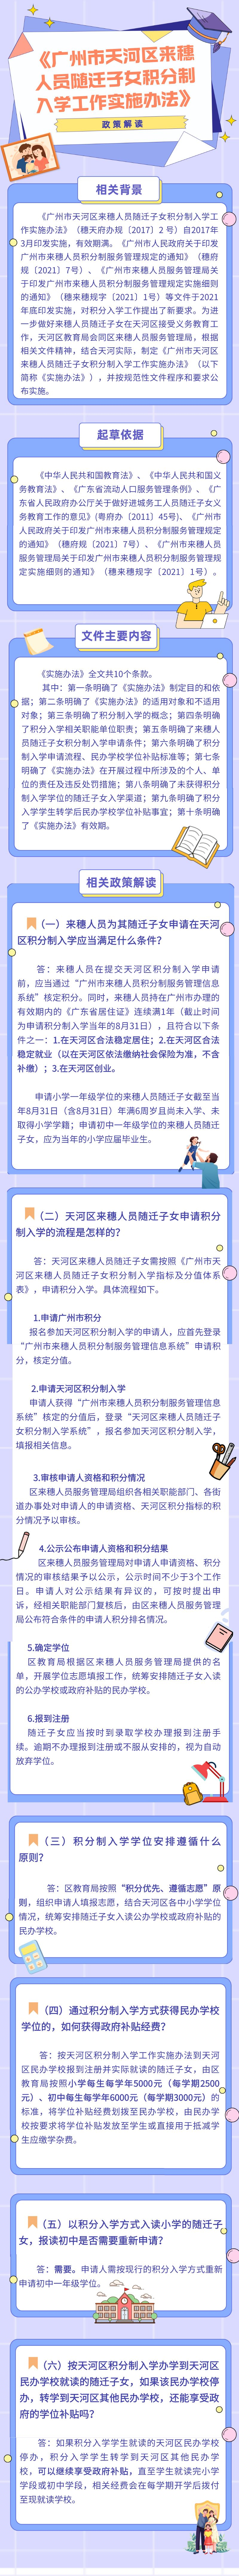 广州市天河区来穗人员随迁子女积分制入学工作实施办法.jpg